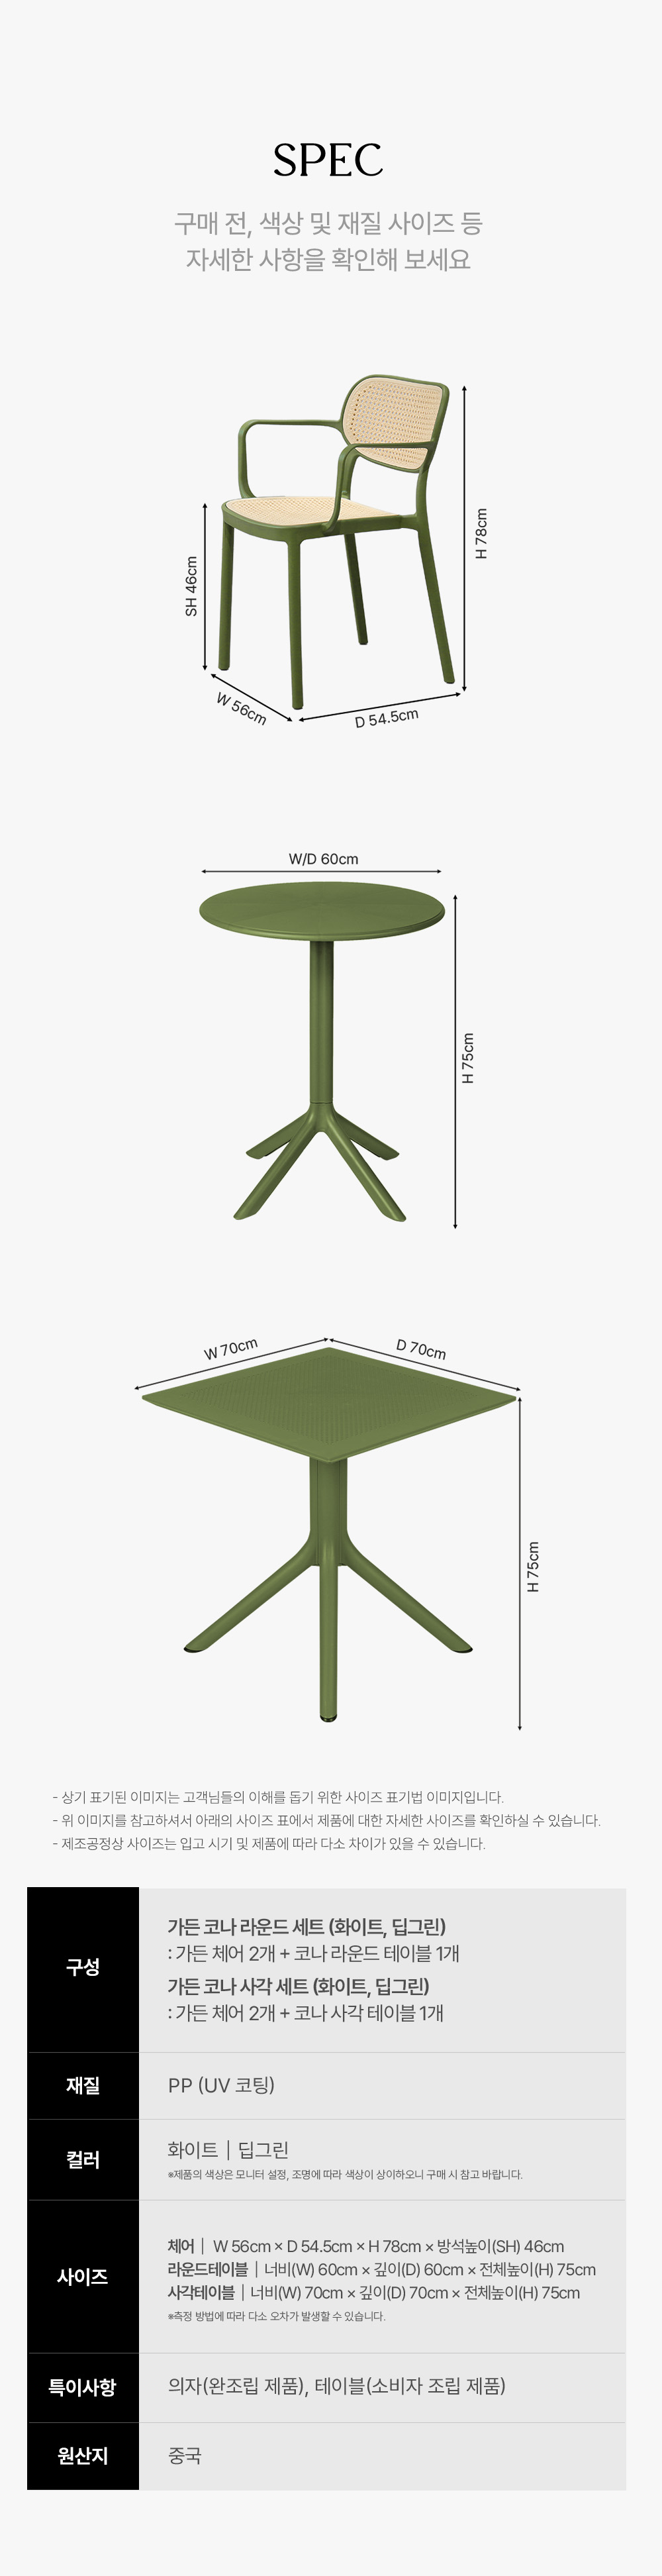 피카소가구 아트웨이 키워드 : 가든코나세트 야외세트 야외가구 야외테이블 야외의자 정원가구 테라스가구 루프탑가구 